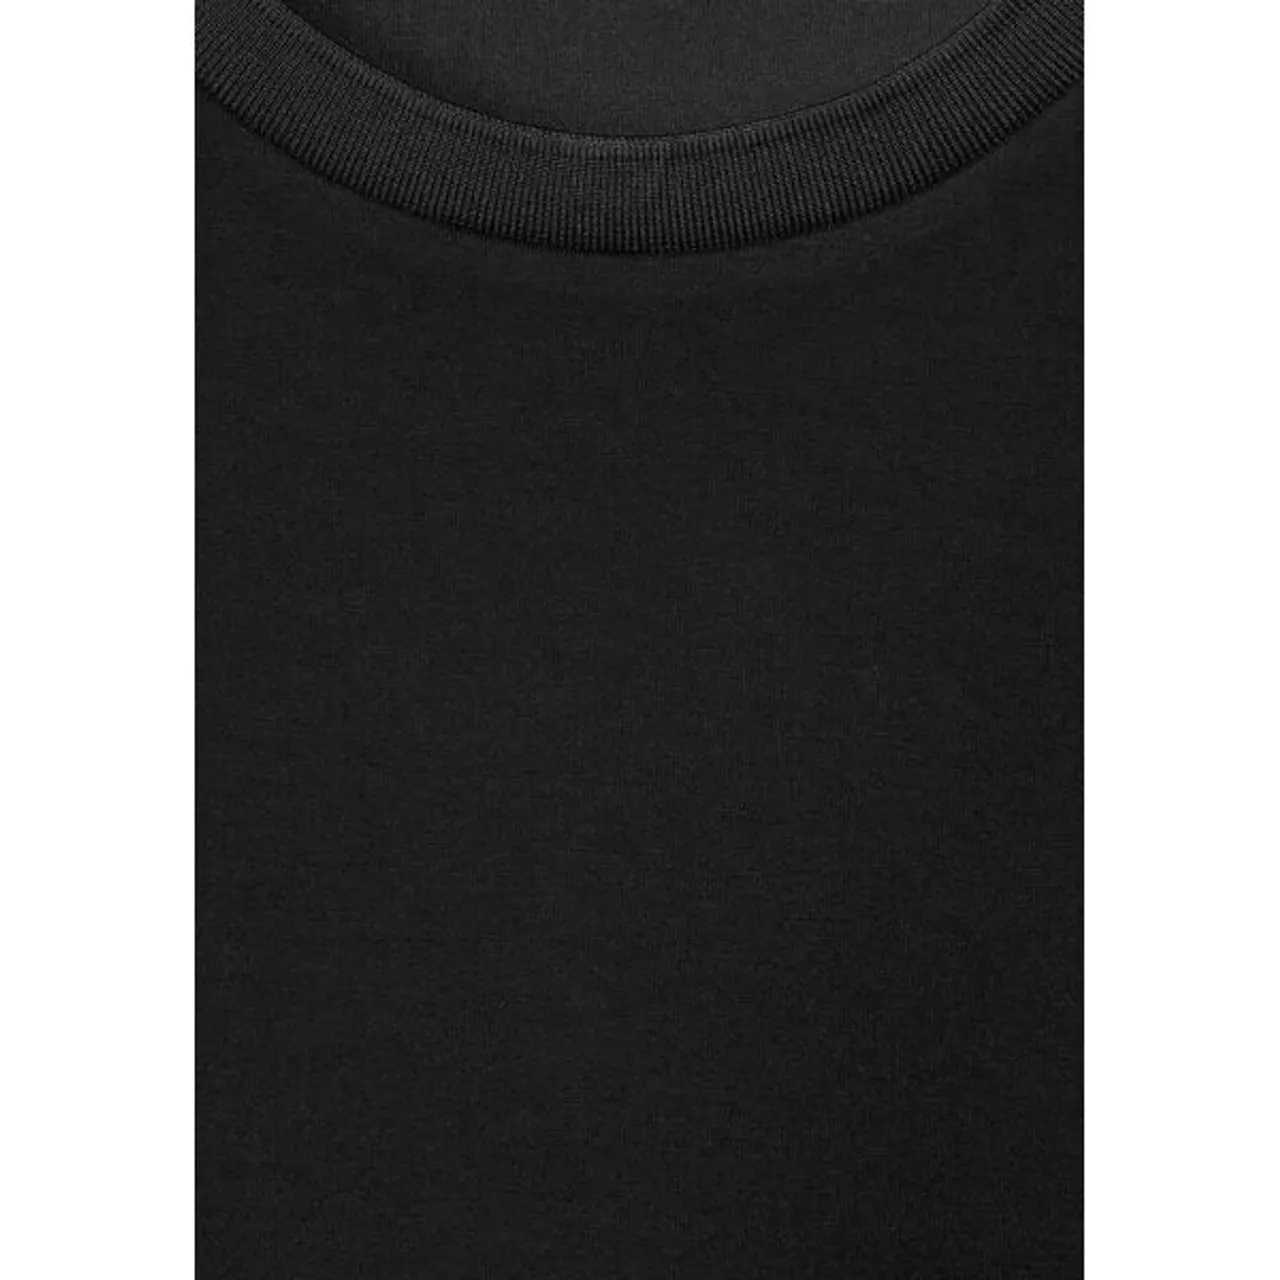 Sweatkleid STREET ONE Gr. 42, EURO-Größen, schwarz (black) Damen Kleider Freizeitkleider